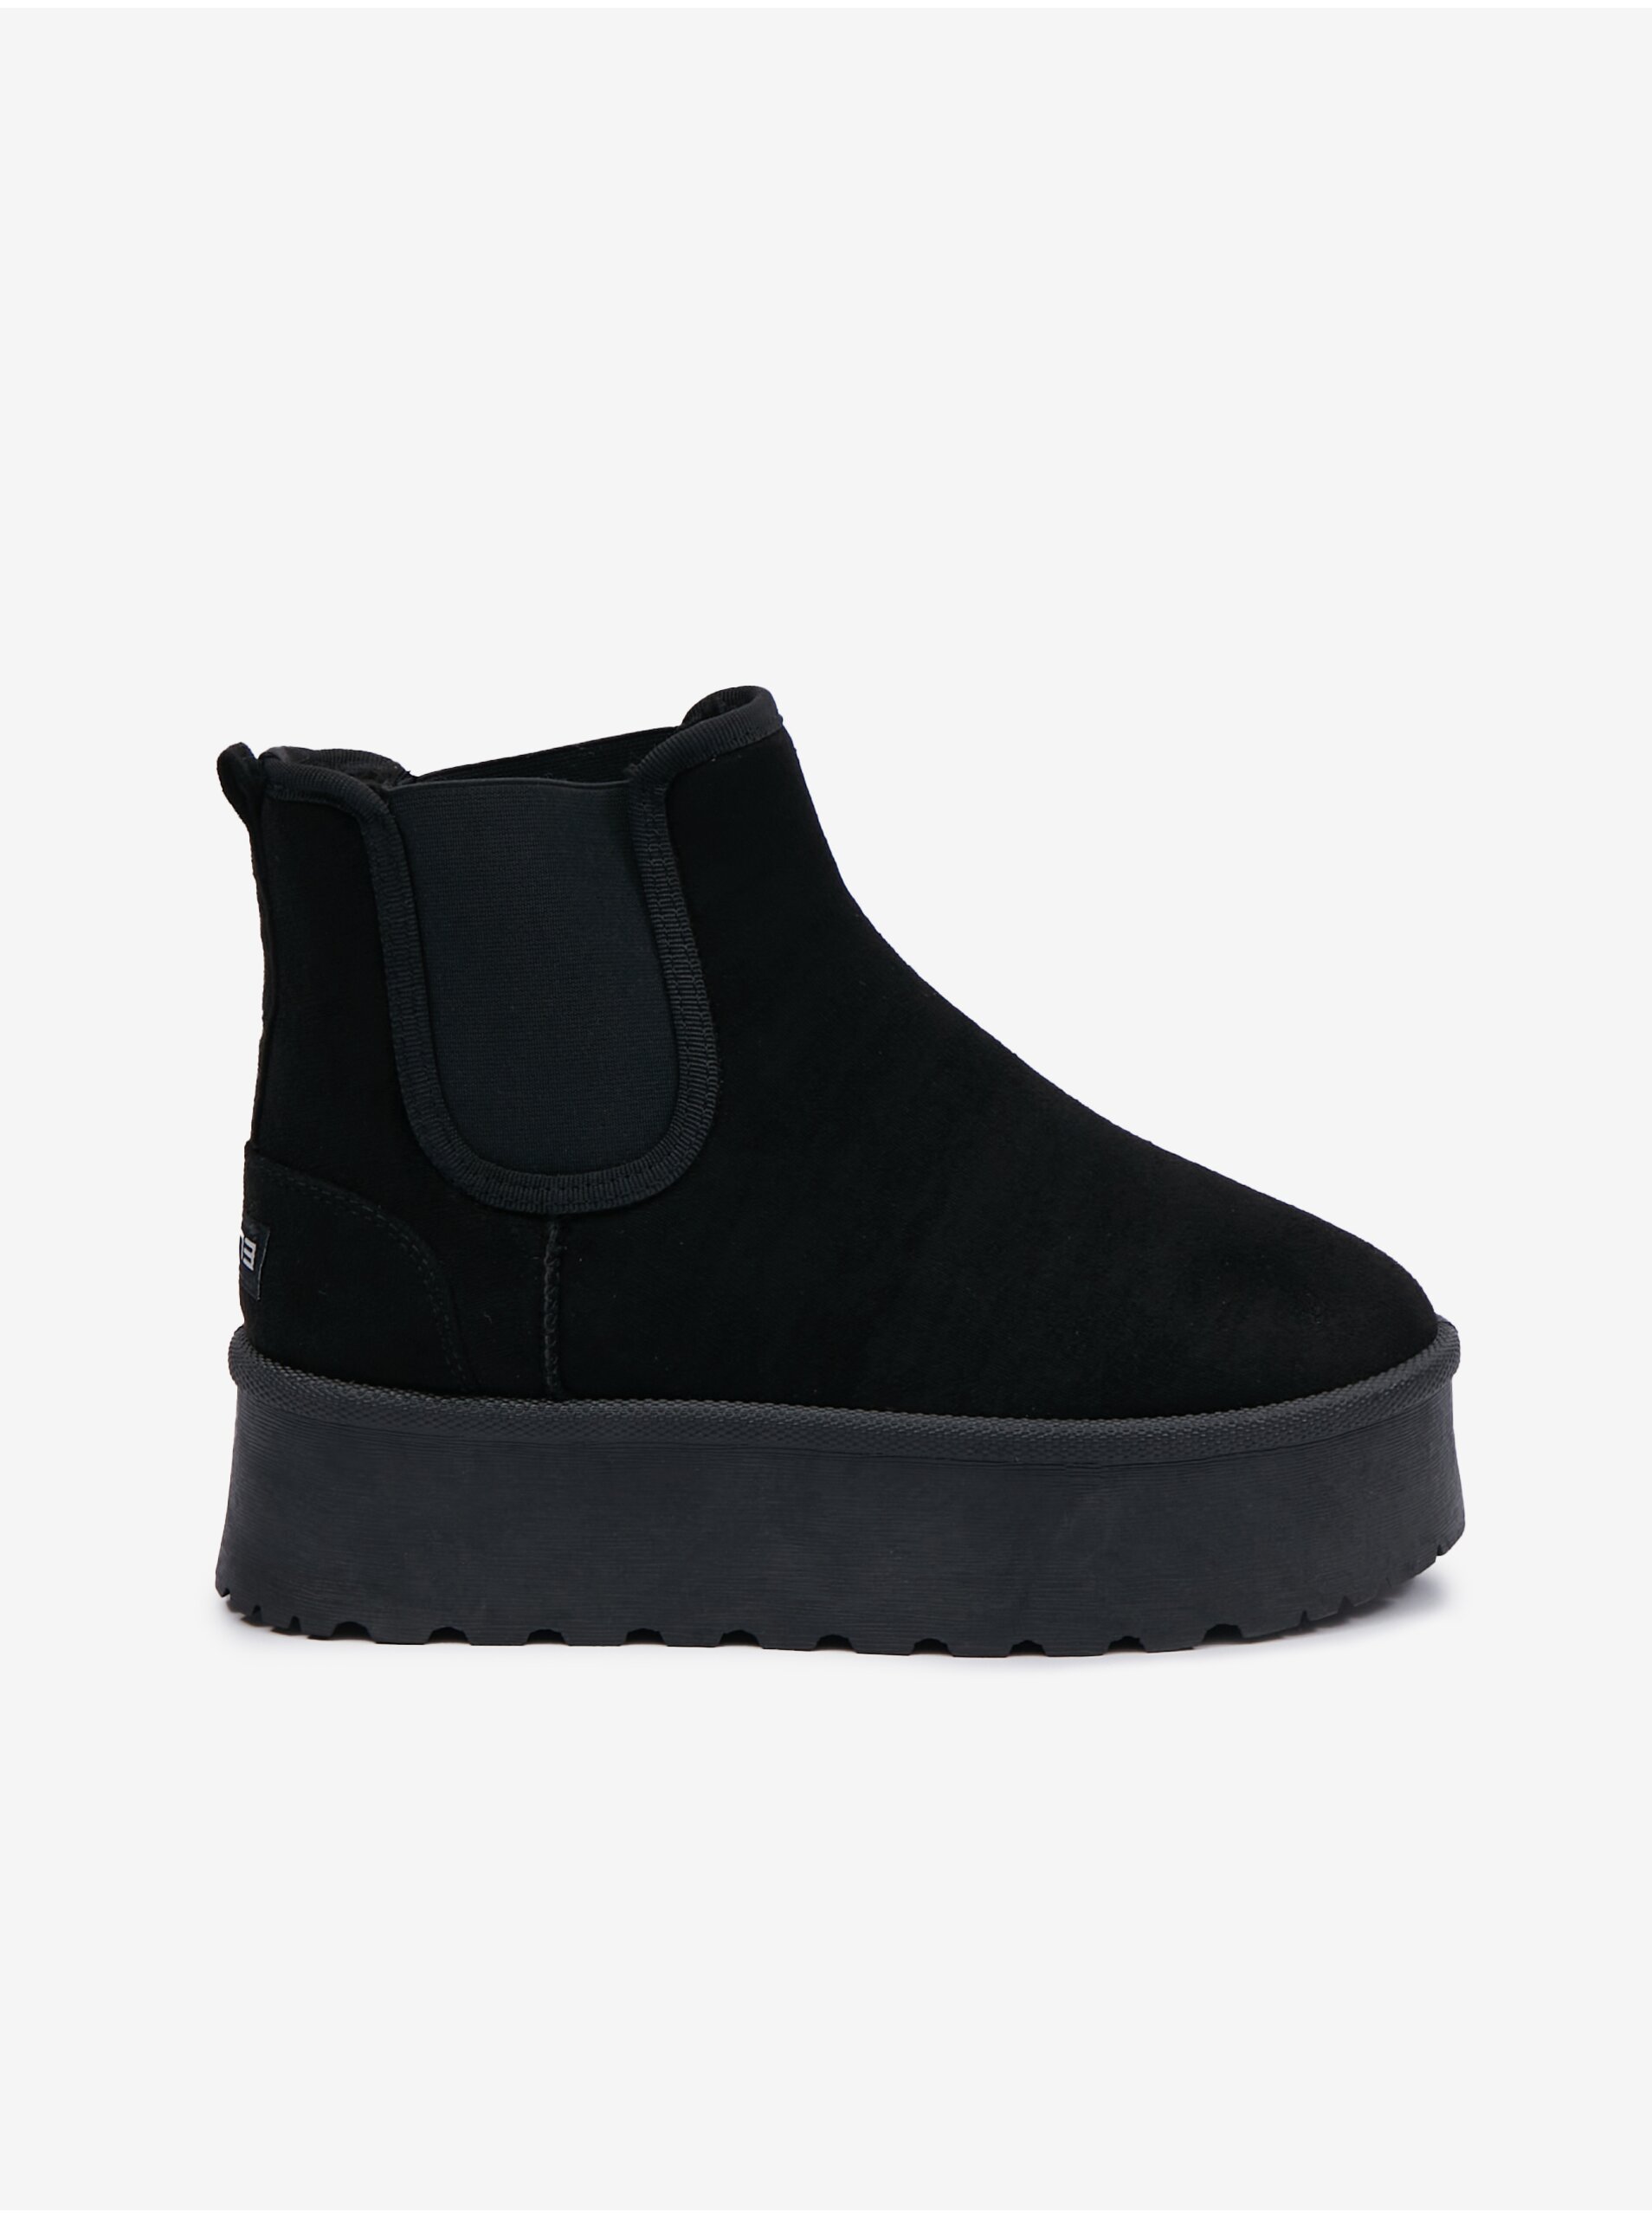 E-shop Čierne dámske zimné členkové topánky SAM 73 Cassiopeia